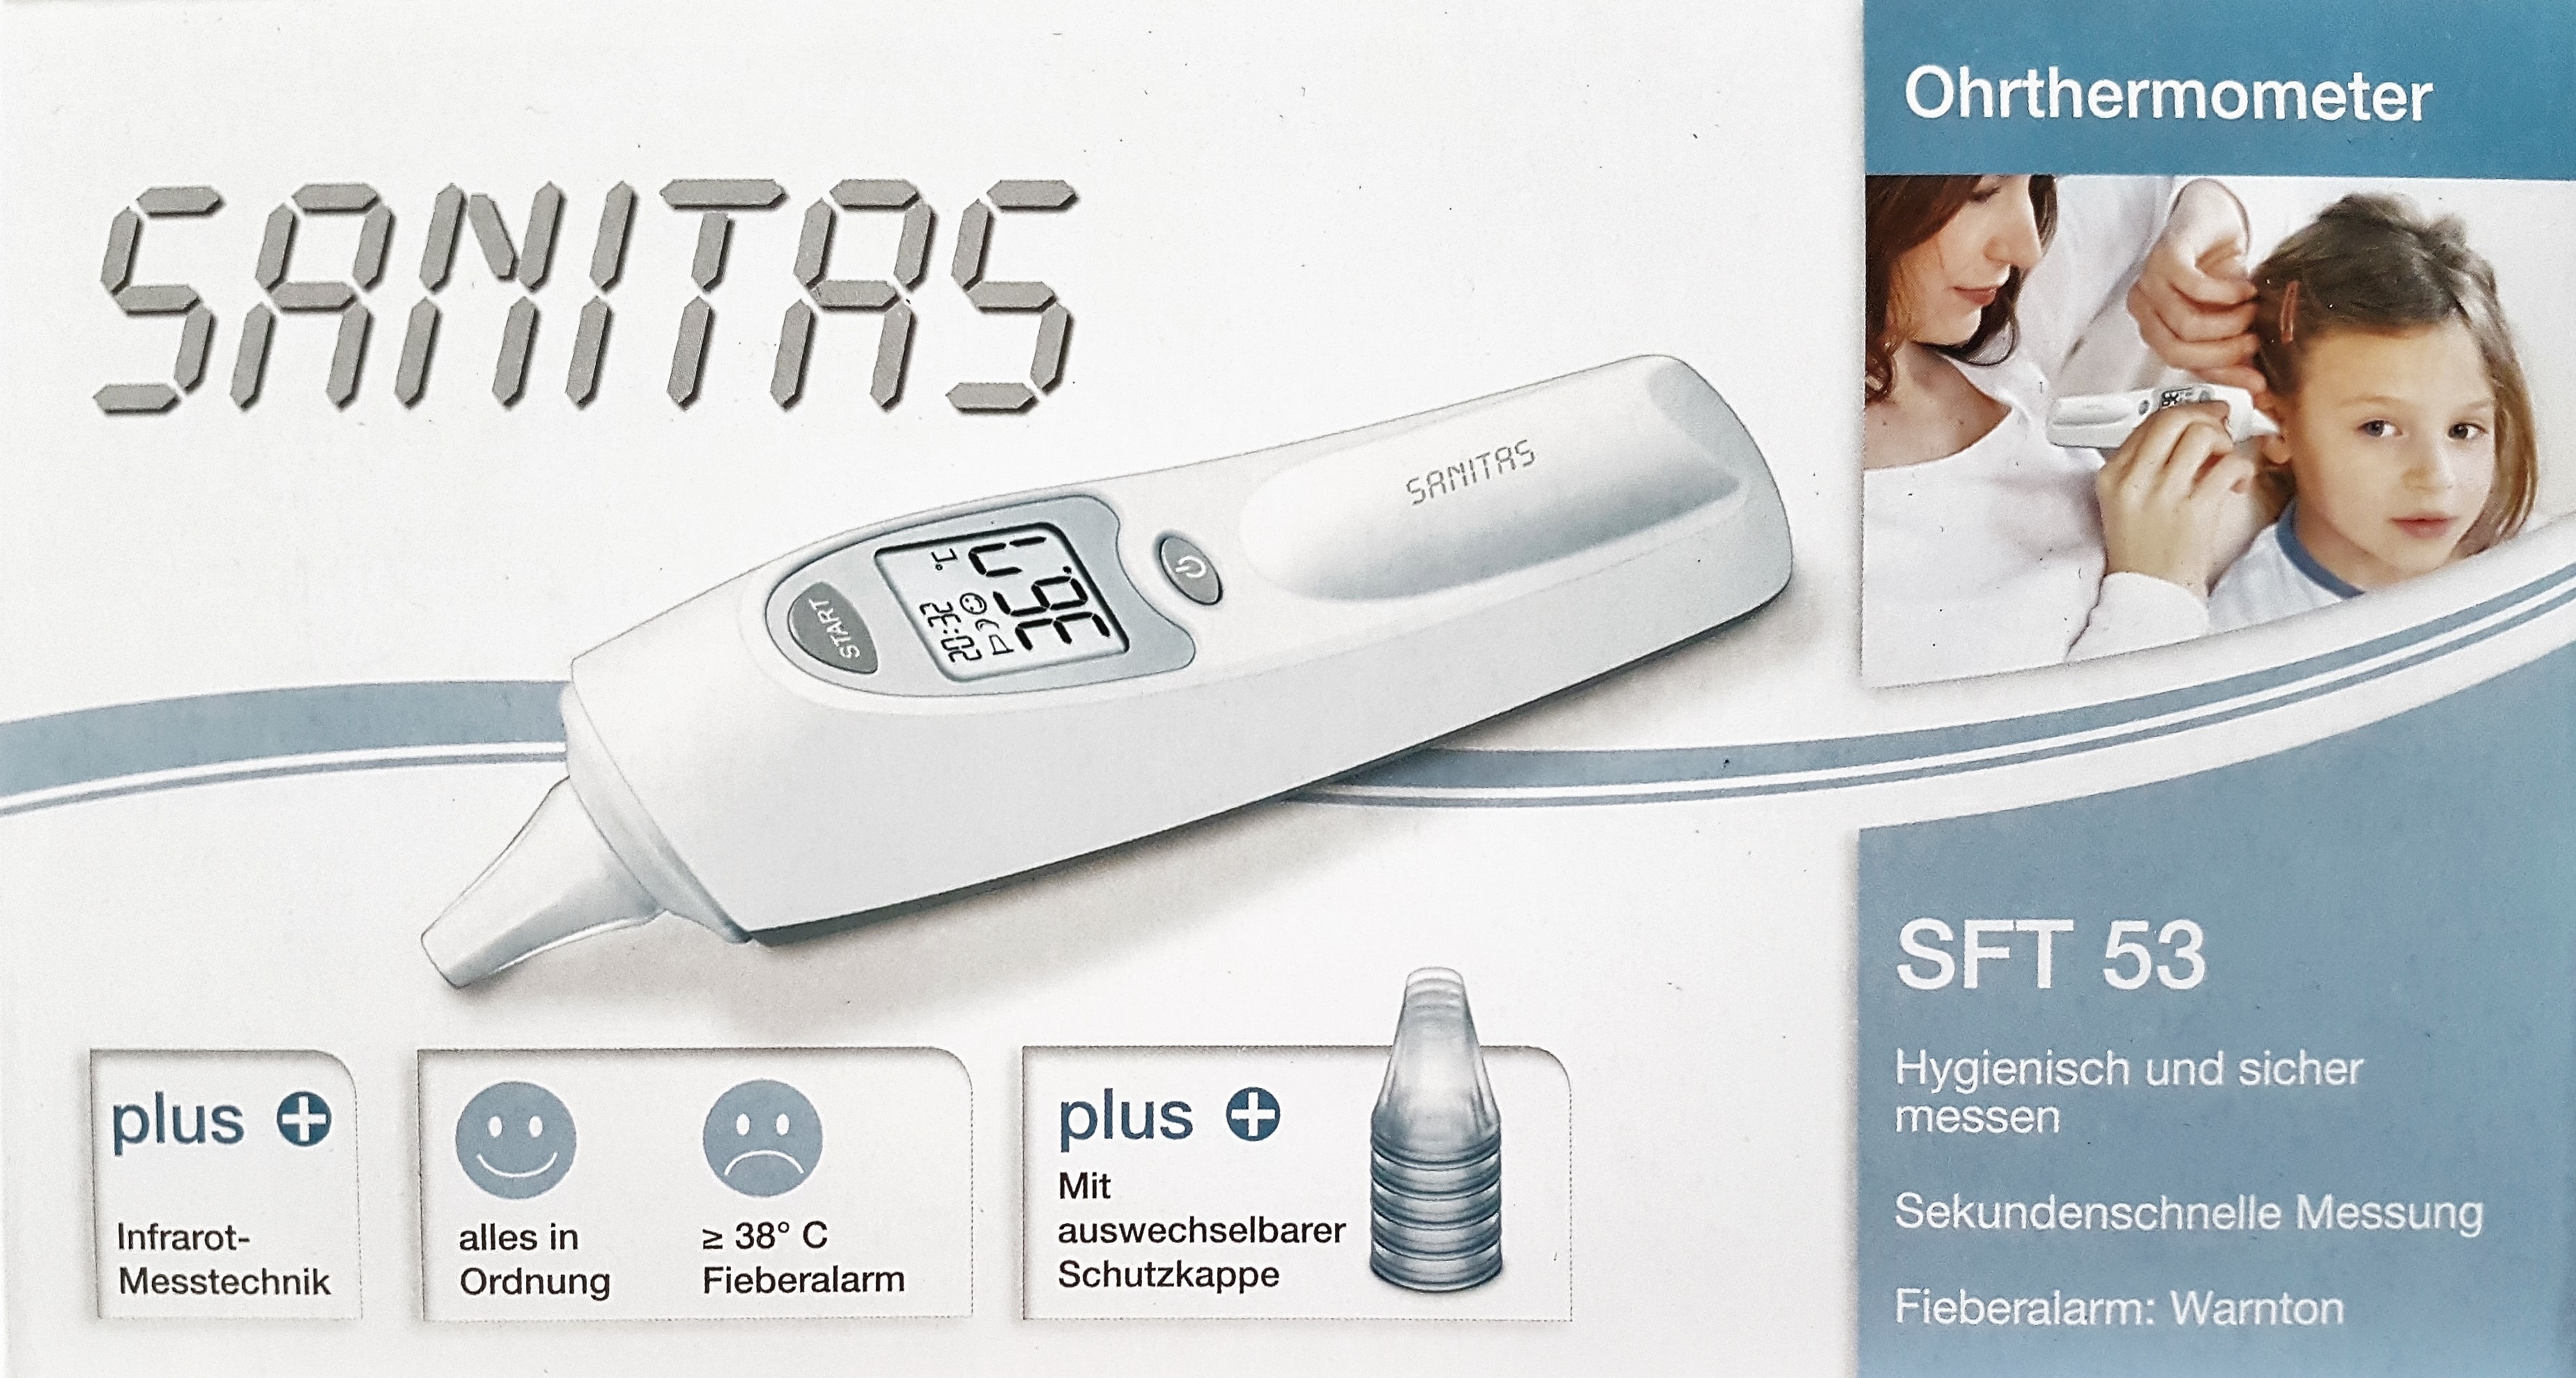 Sanitas Ohrthermometer für Kinder oder Erwachsene. Hygienisch und sicher  messen mit Infrarot Messtechnik. In 1 Sekunde Ergebnis. | Buymix